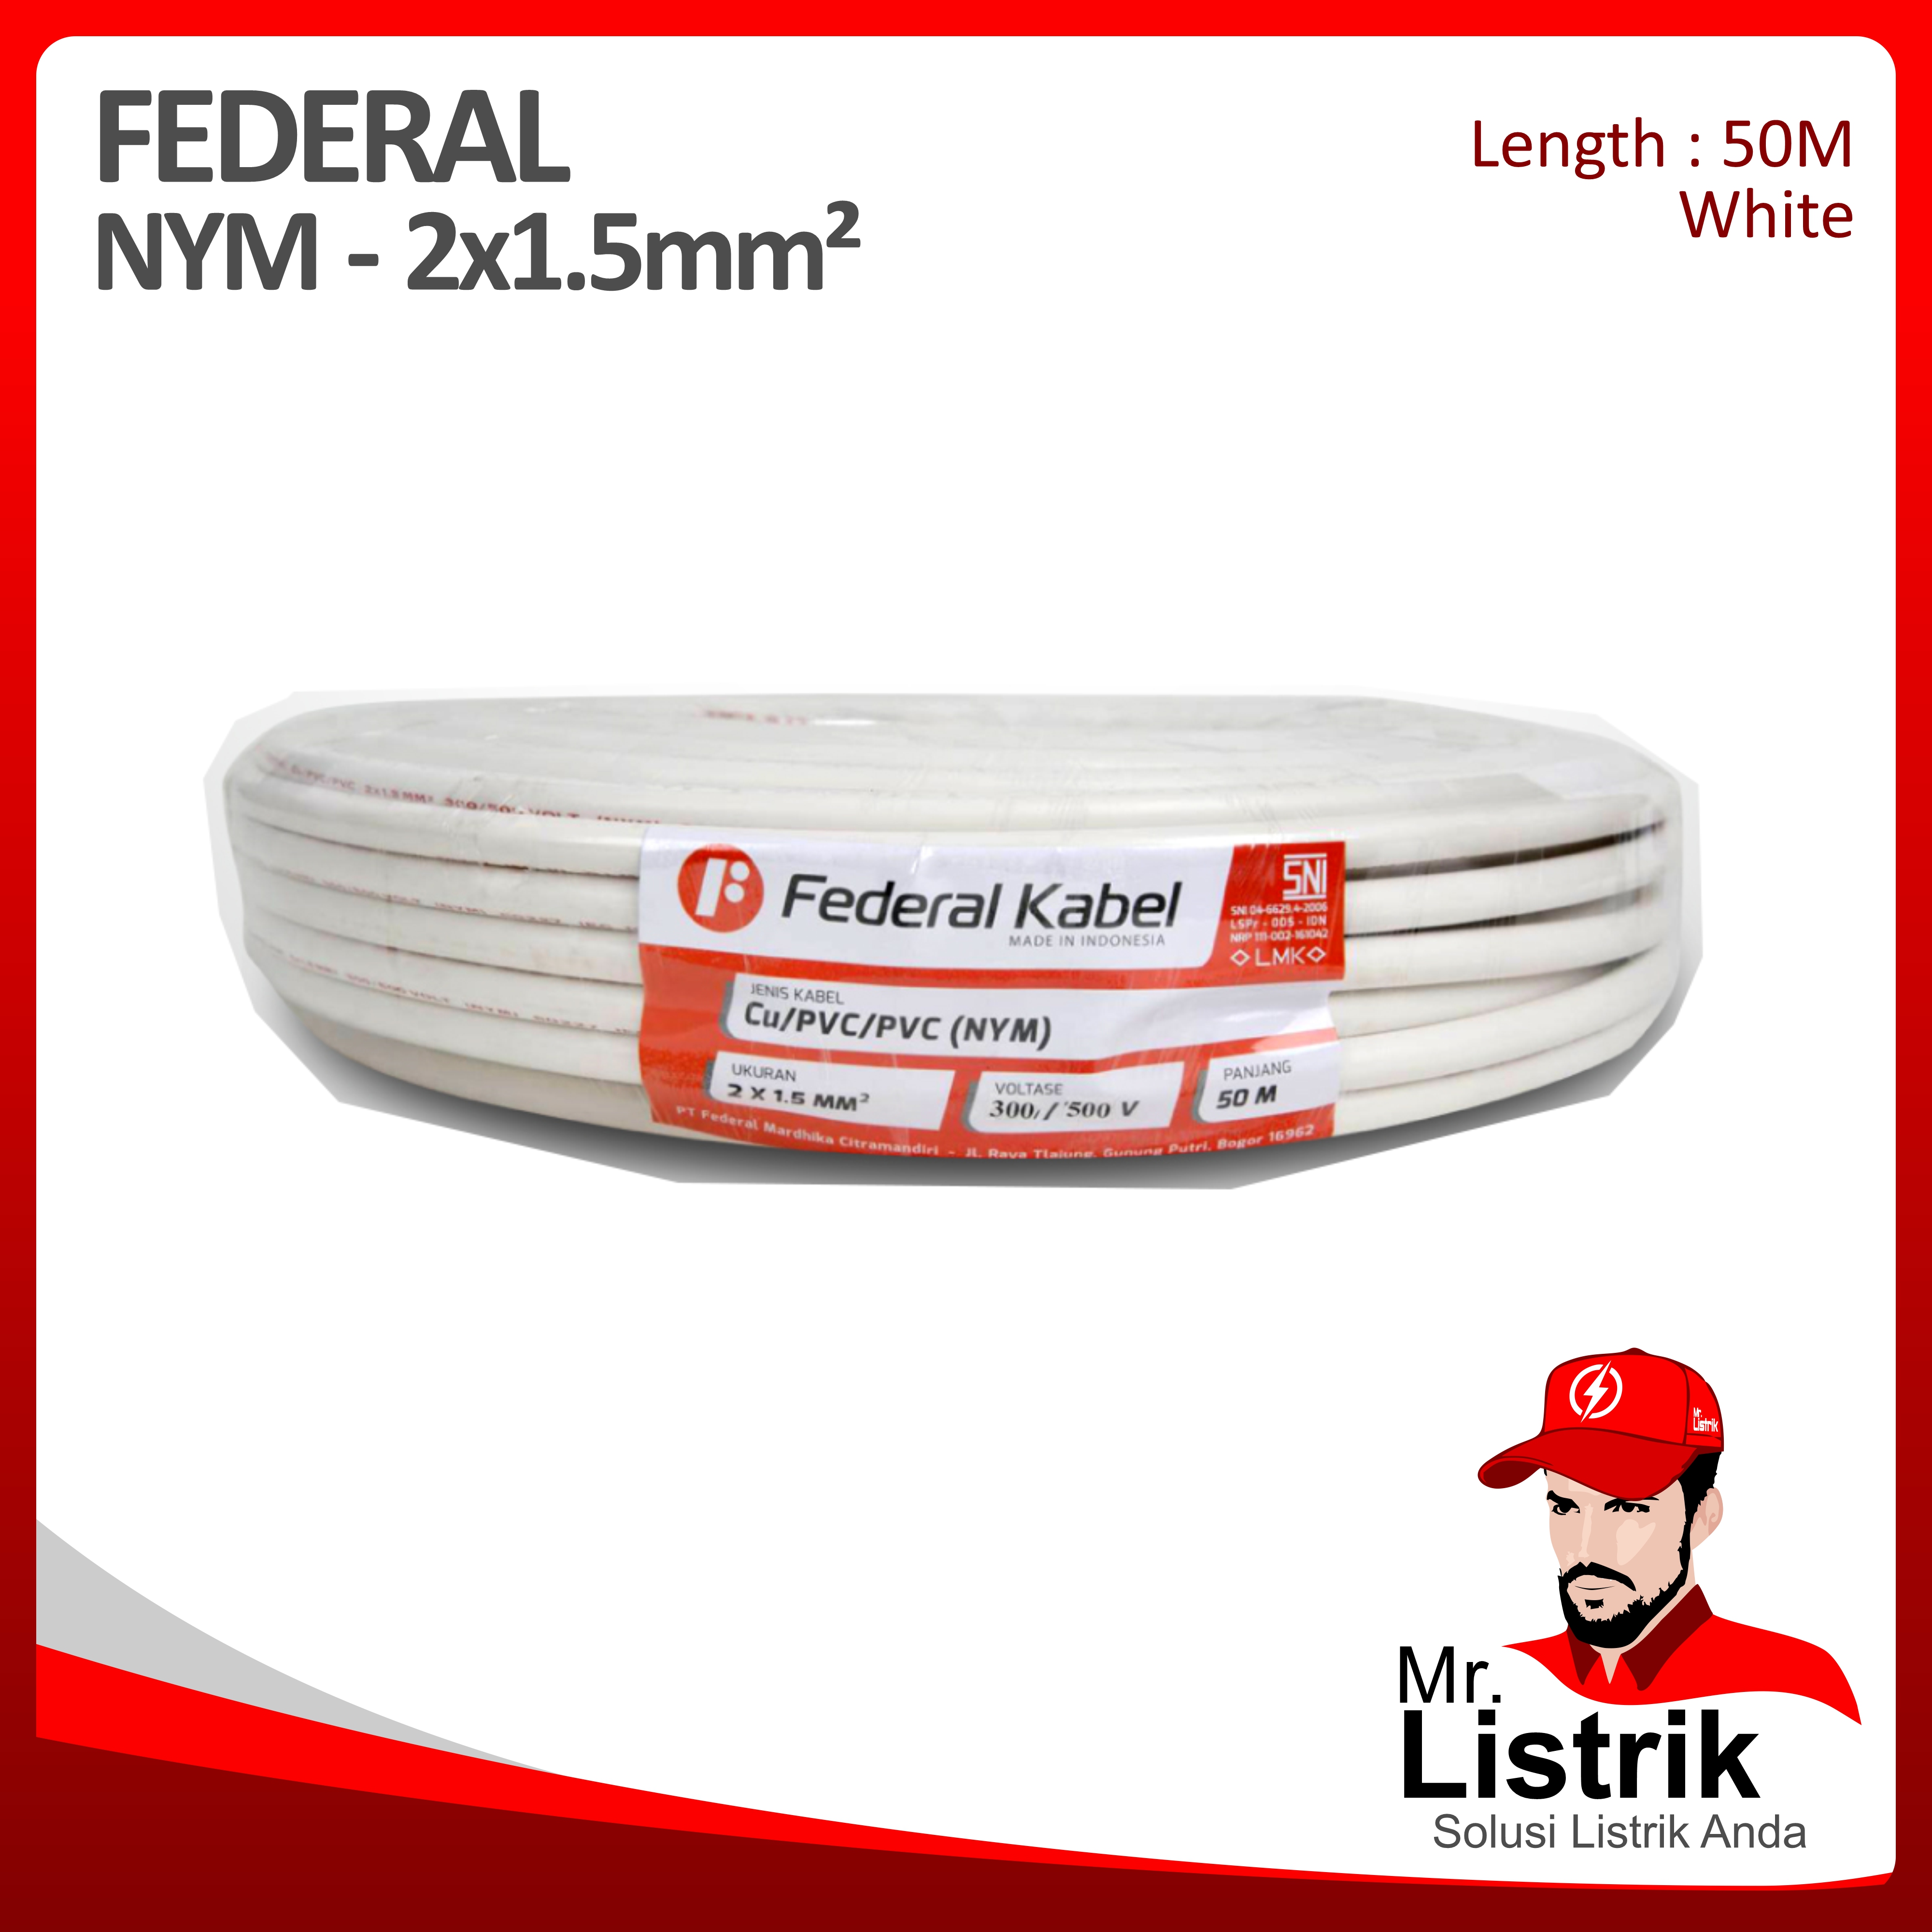 Kabel NYM Federal 2x1.5 mm² @50 Mtr